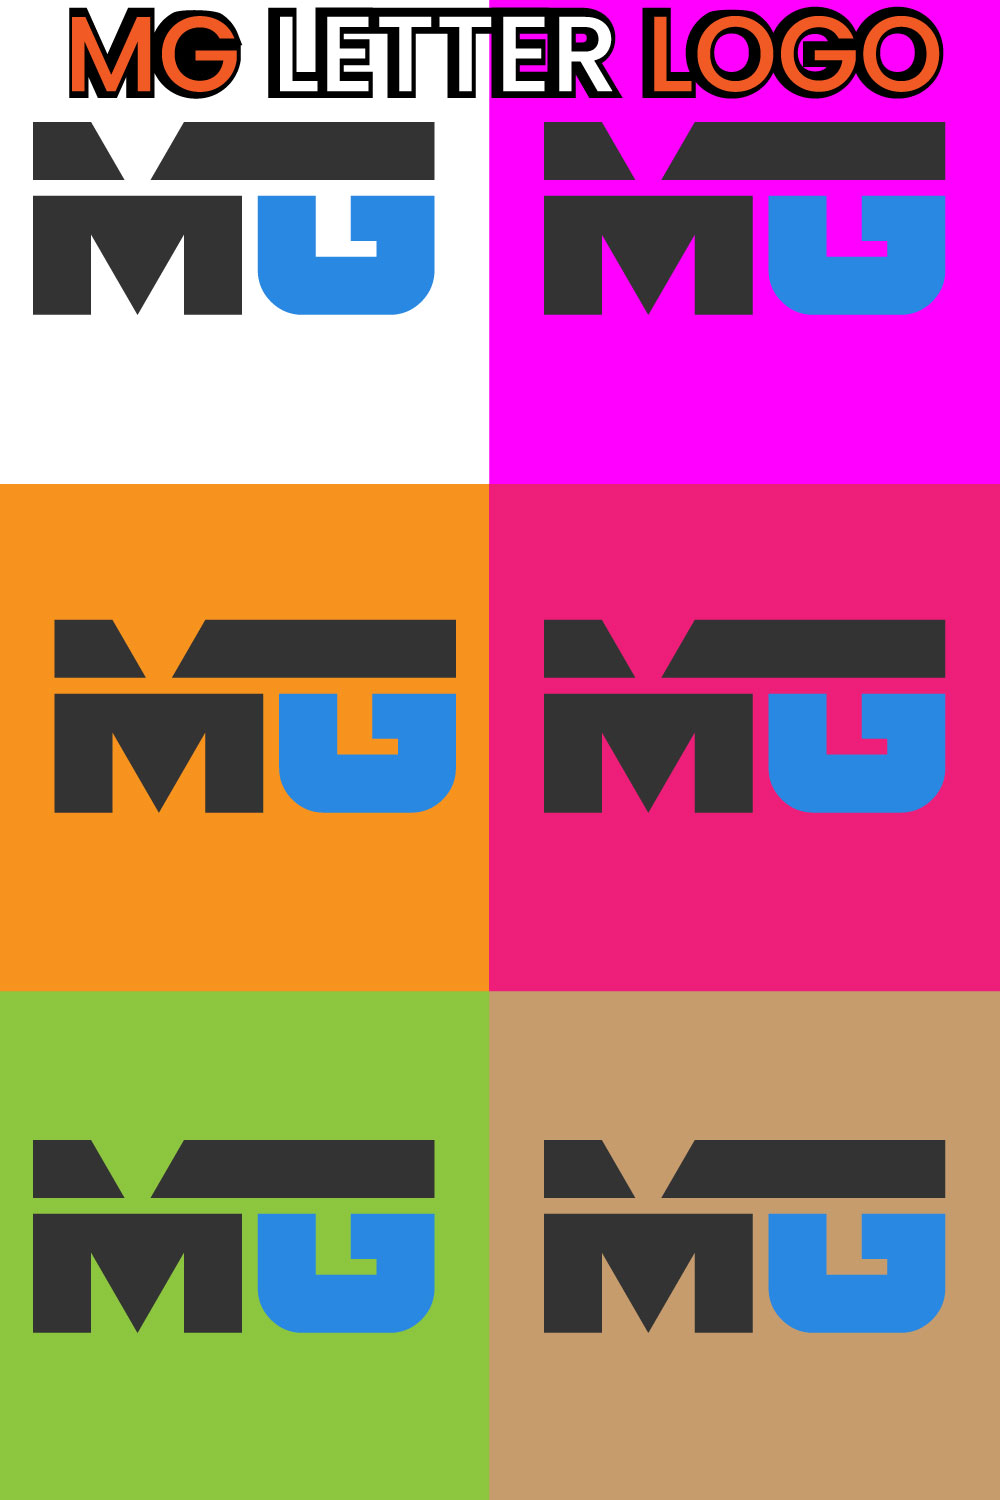 Logo MG Letter Design Template pinterest image.